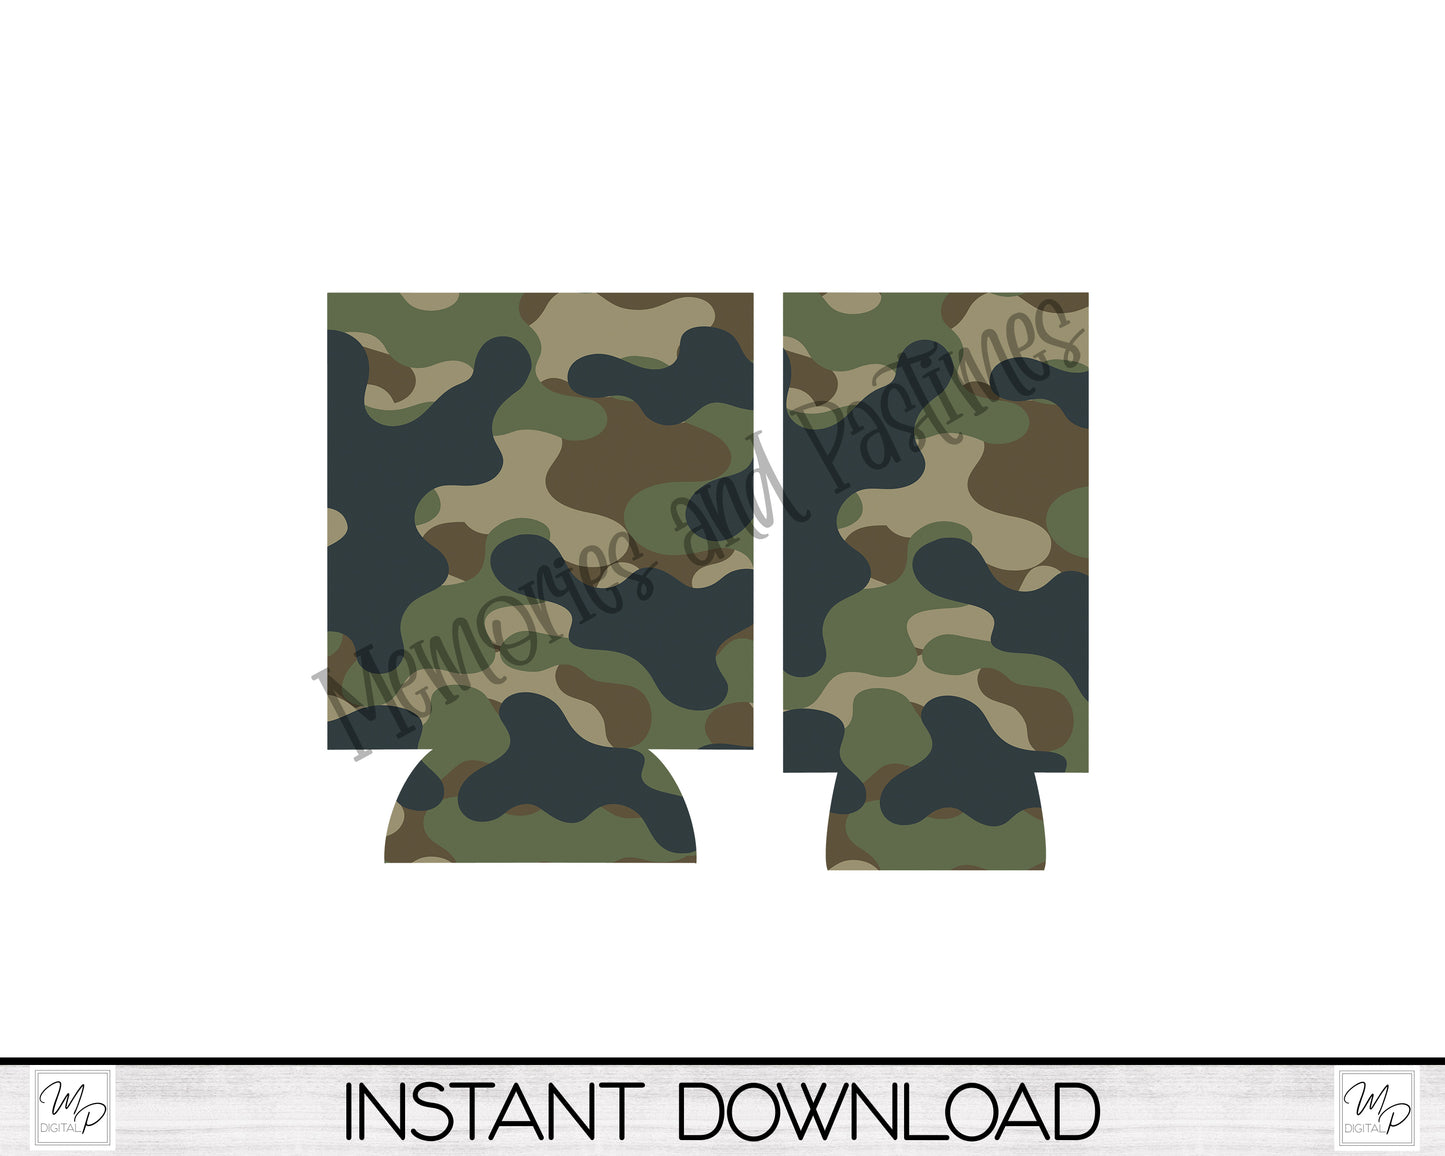 Camouflage Neoprene Can Cooler PNG Sublimation Design, Digital Download